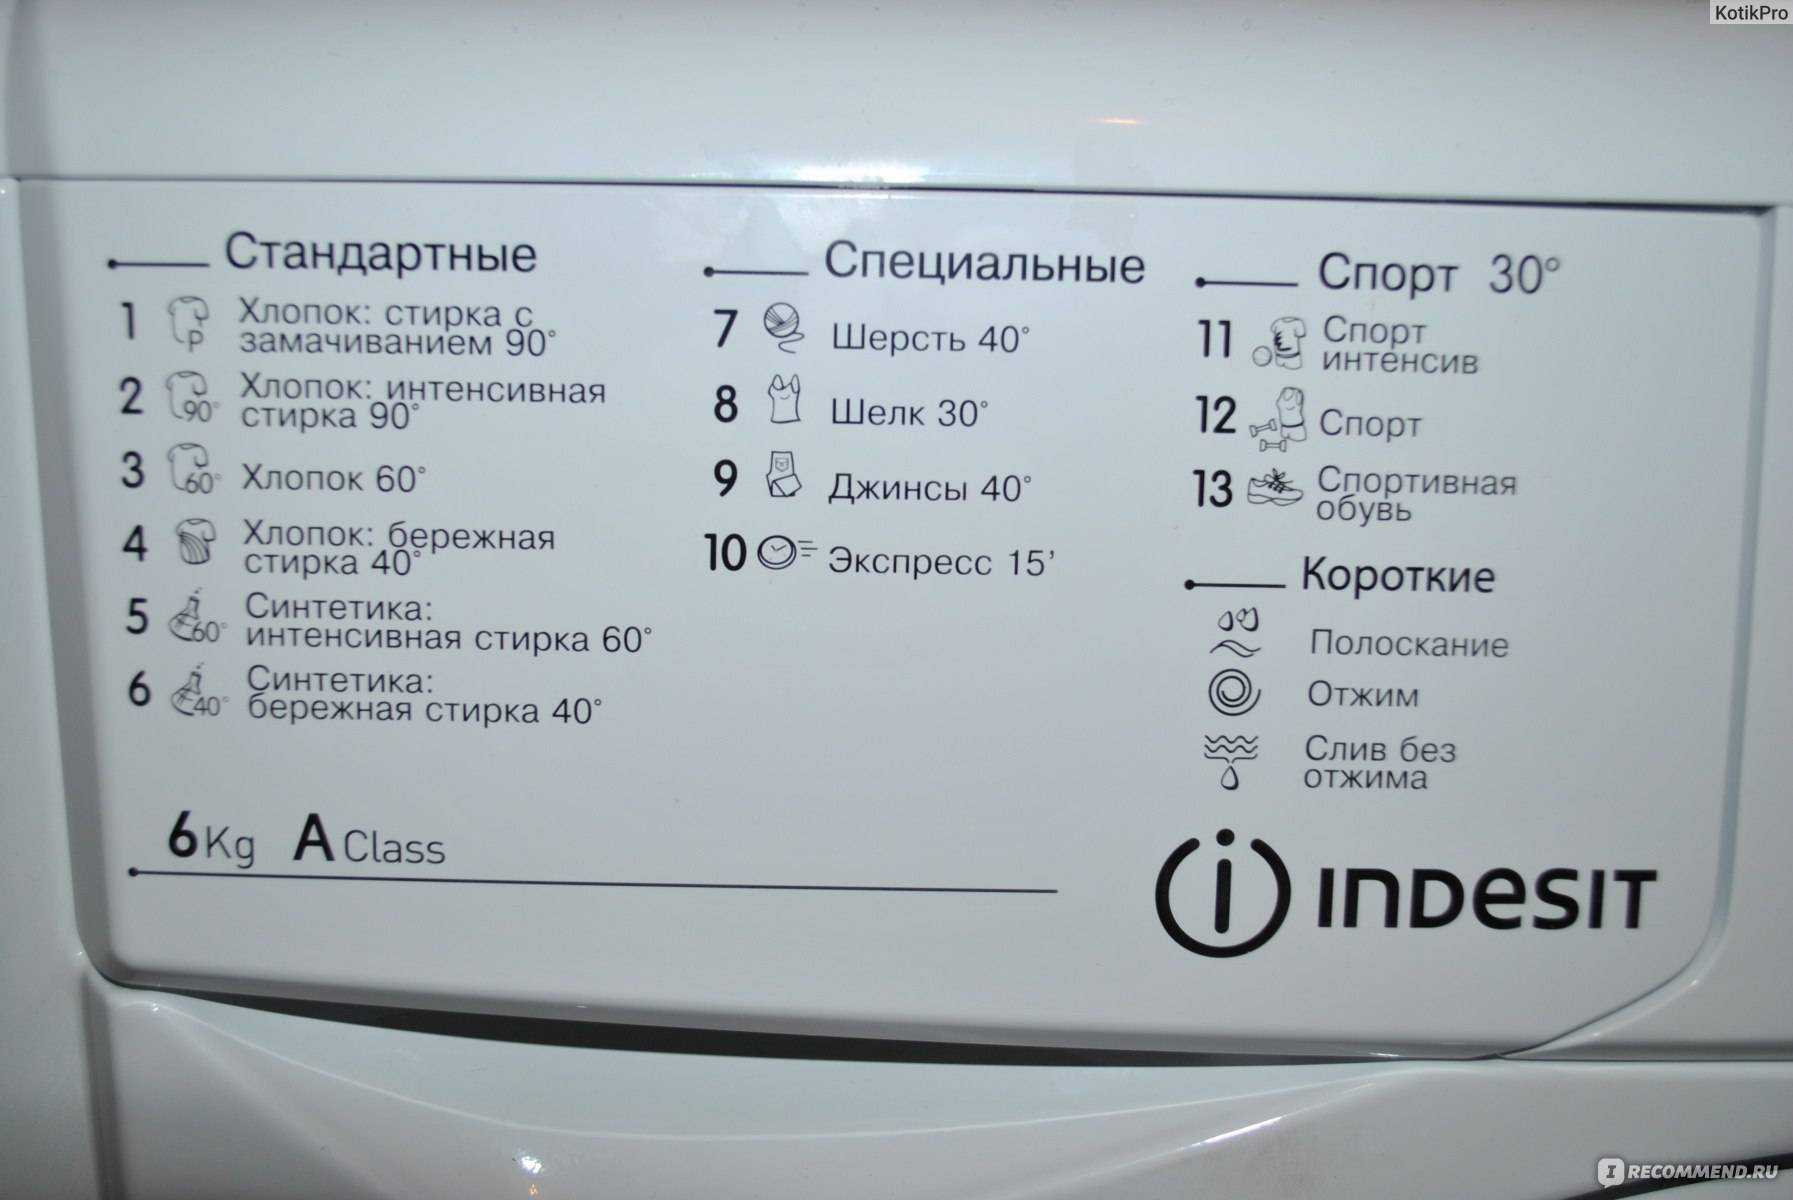 Как стирать в стиральной машине: обзор режимов, выбор средств